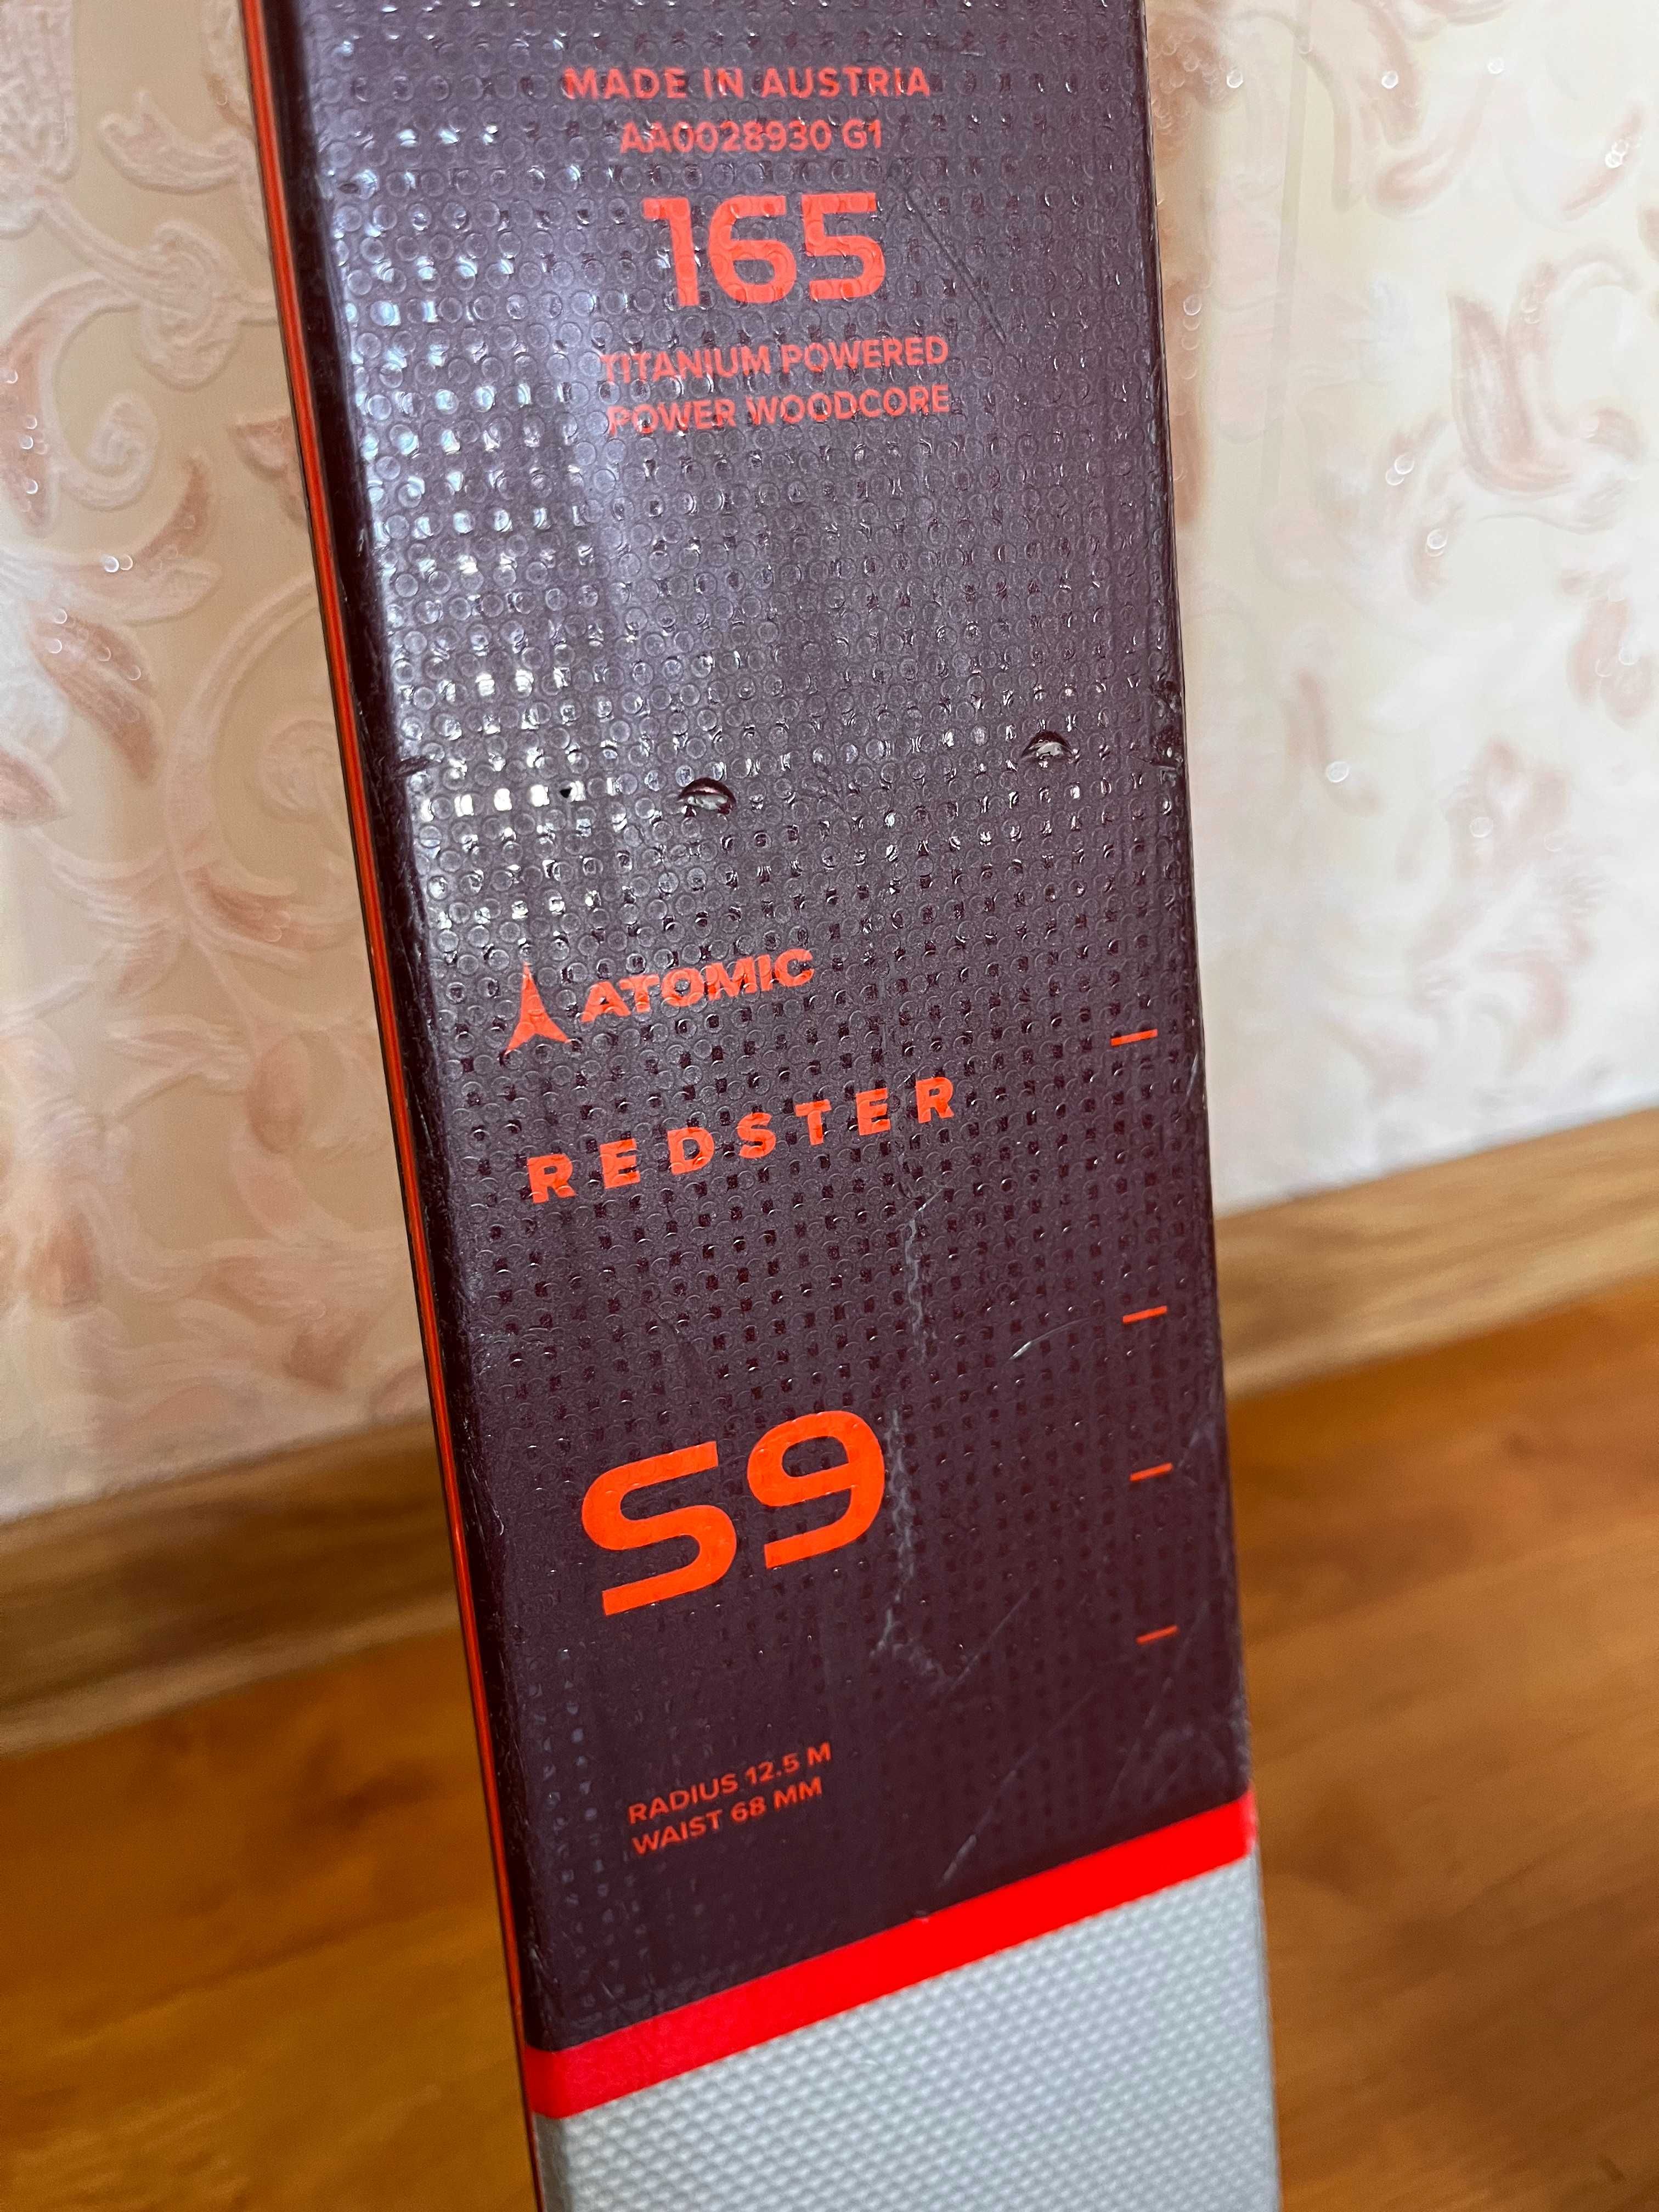 Горные лыжи Atomic Redster S9 Revoshock 165 топ модель